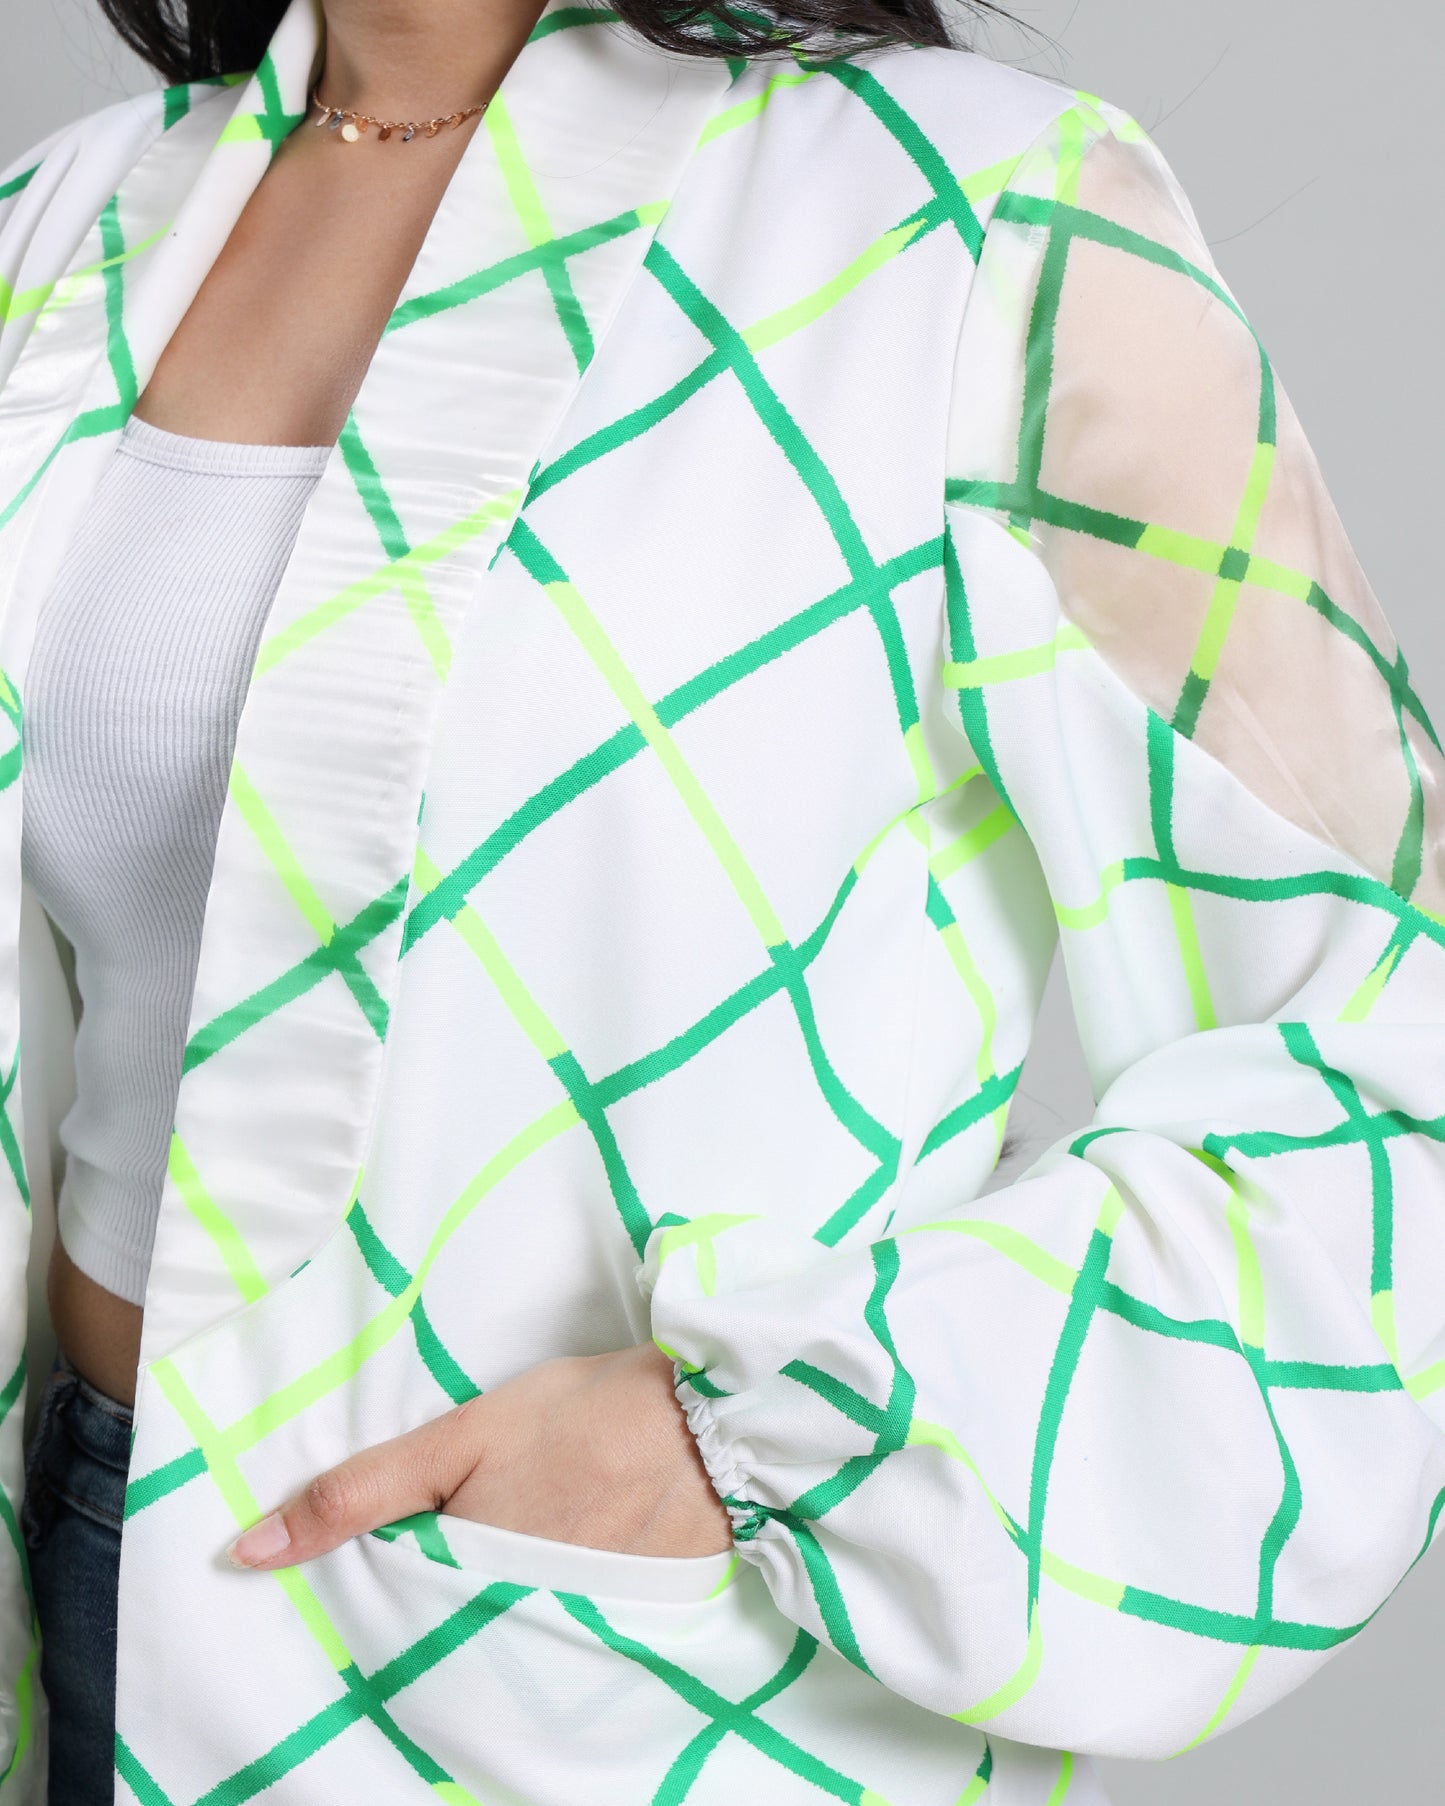 Glow Up Your Sleeves: Women's Trendy Neon Jacket